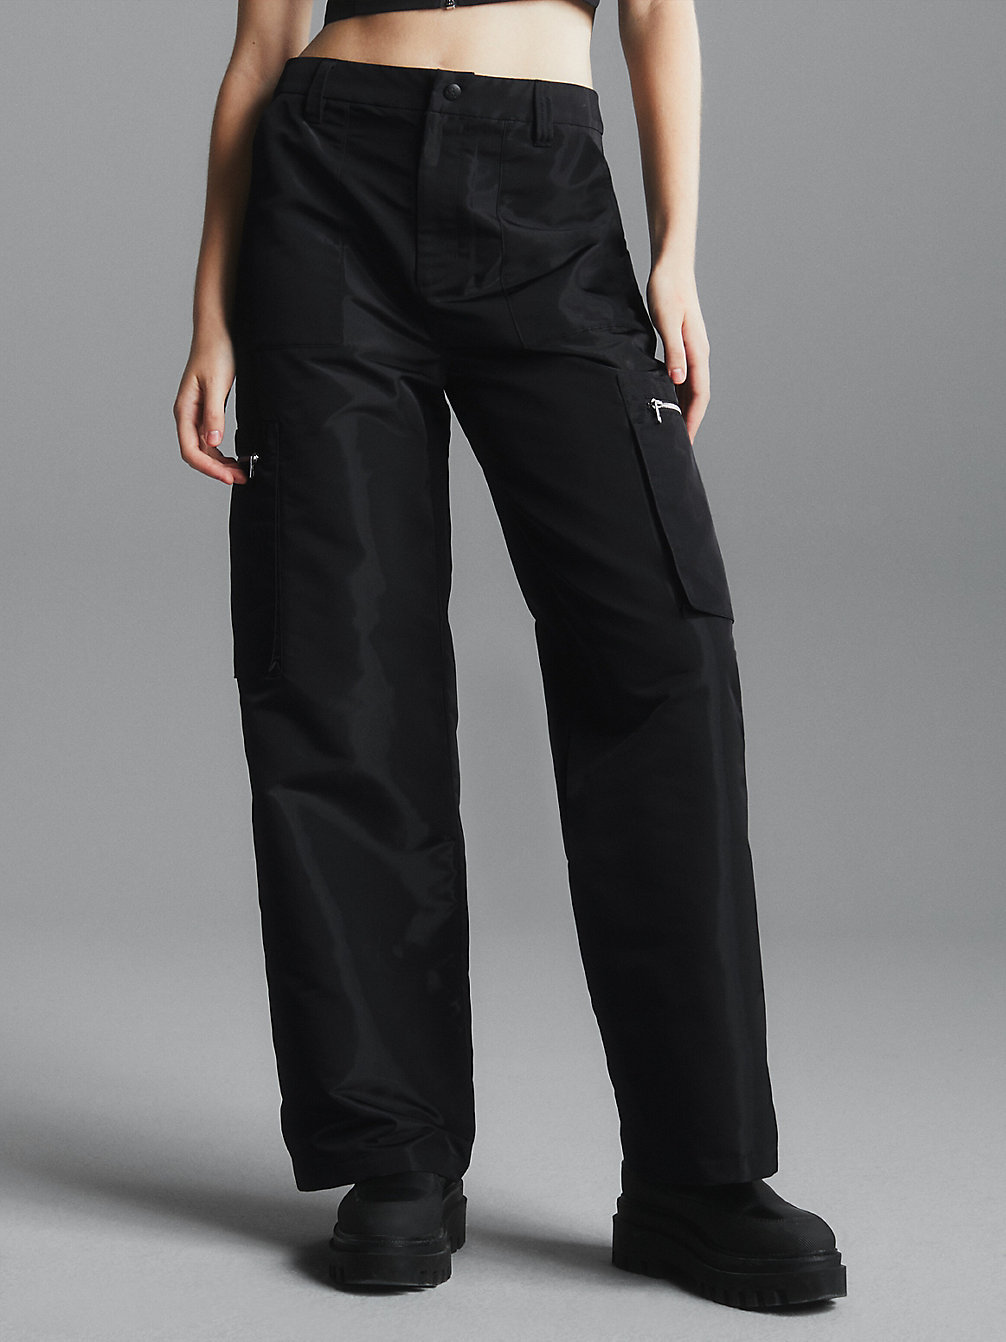 CK BLACK Straight Cargo Pants undefined women Calvin Klein